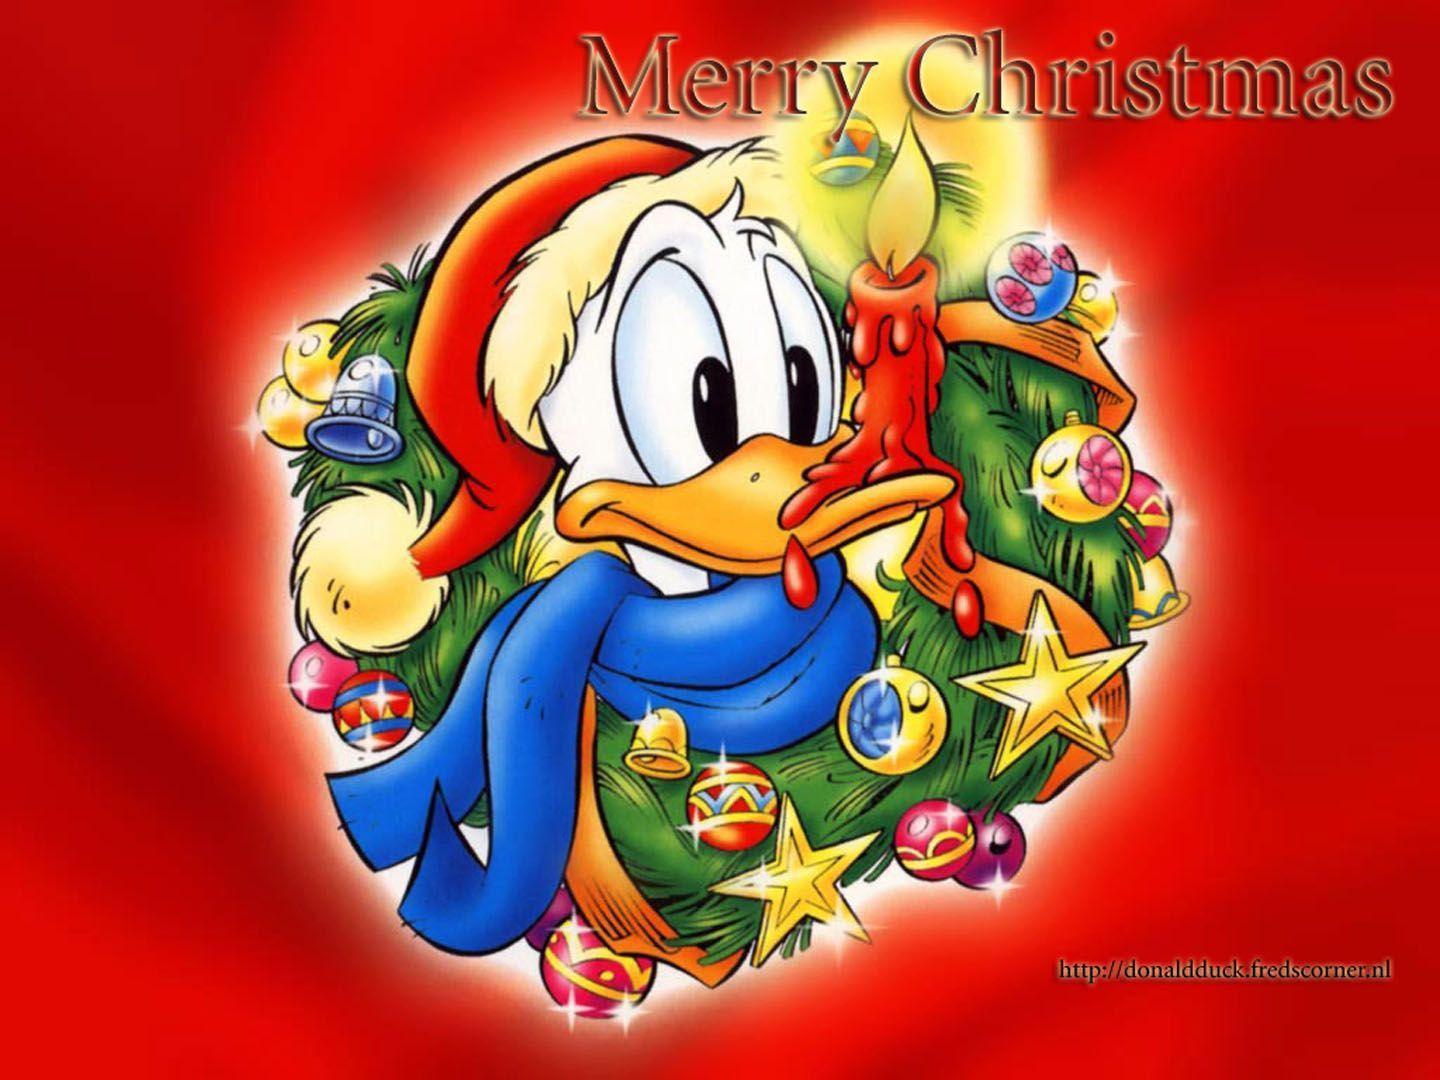 Donald Duck Scrooge Disney Cartoons Wallpaper Picture